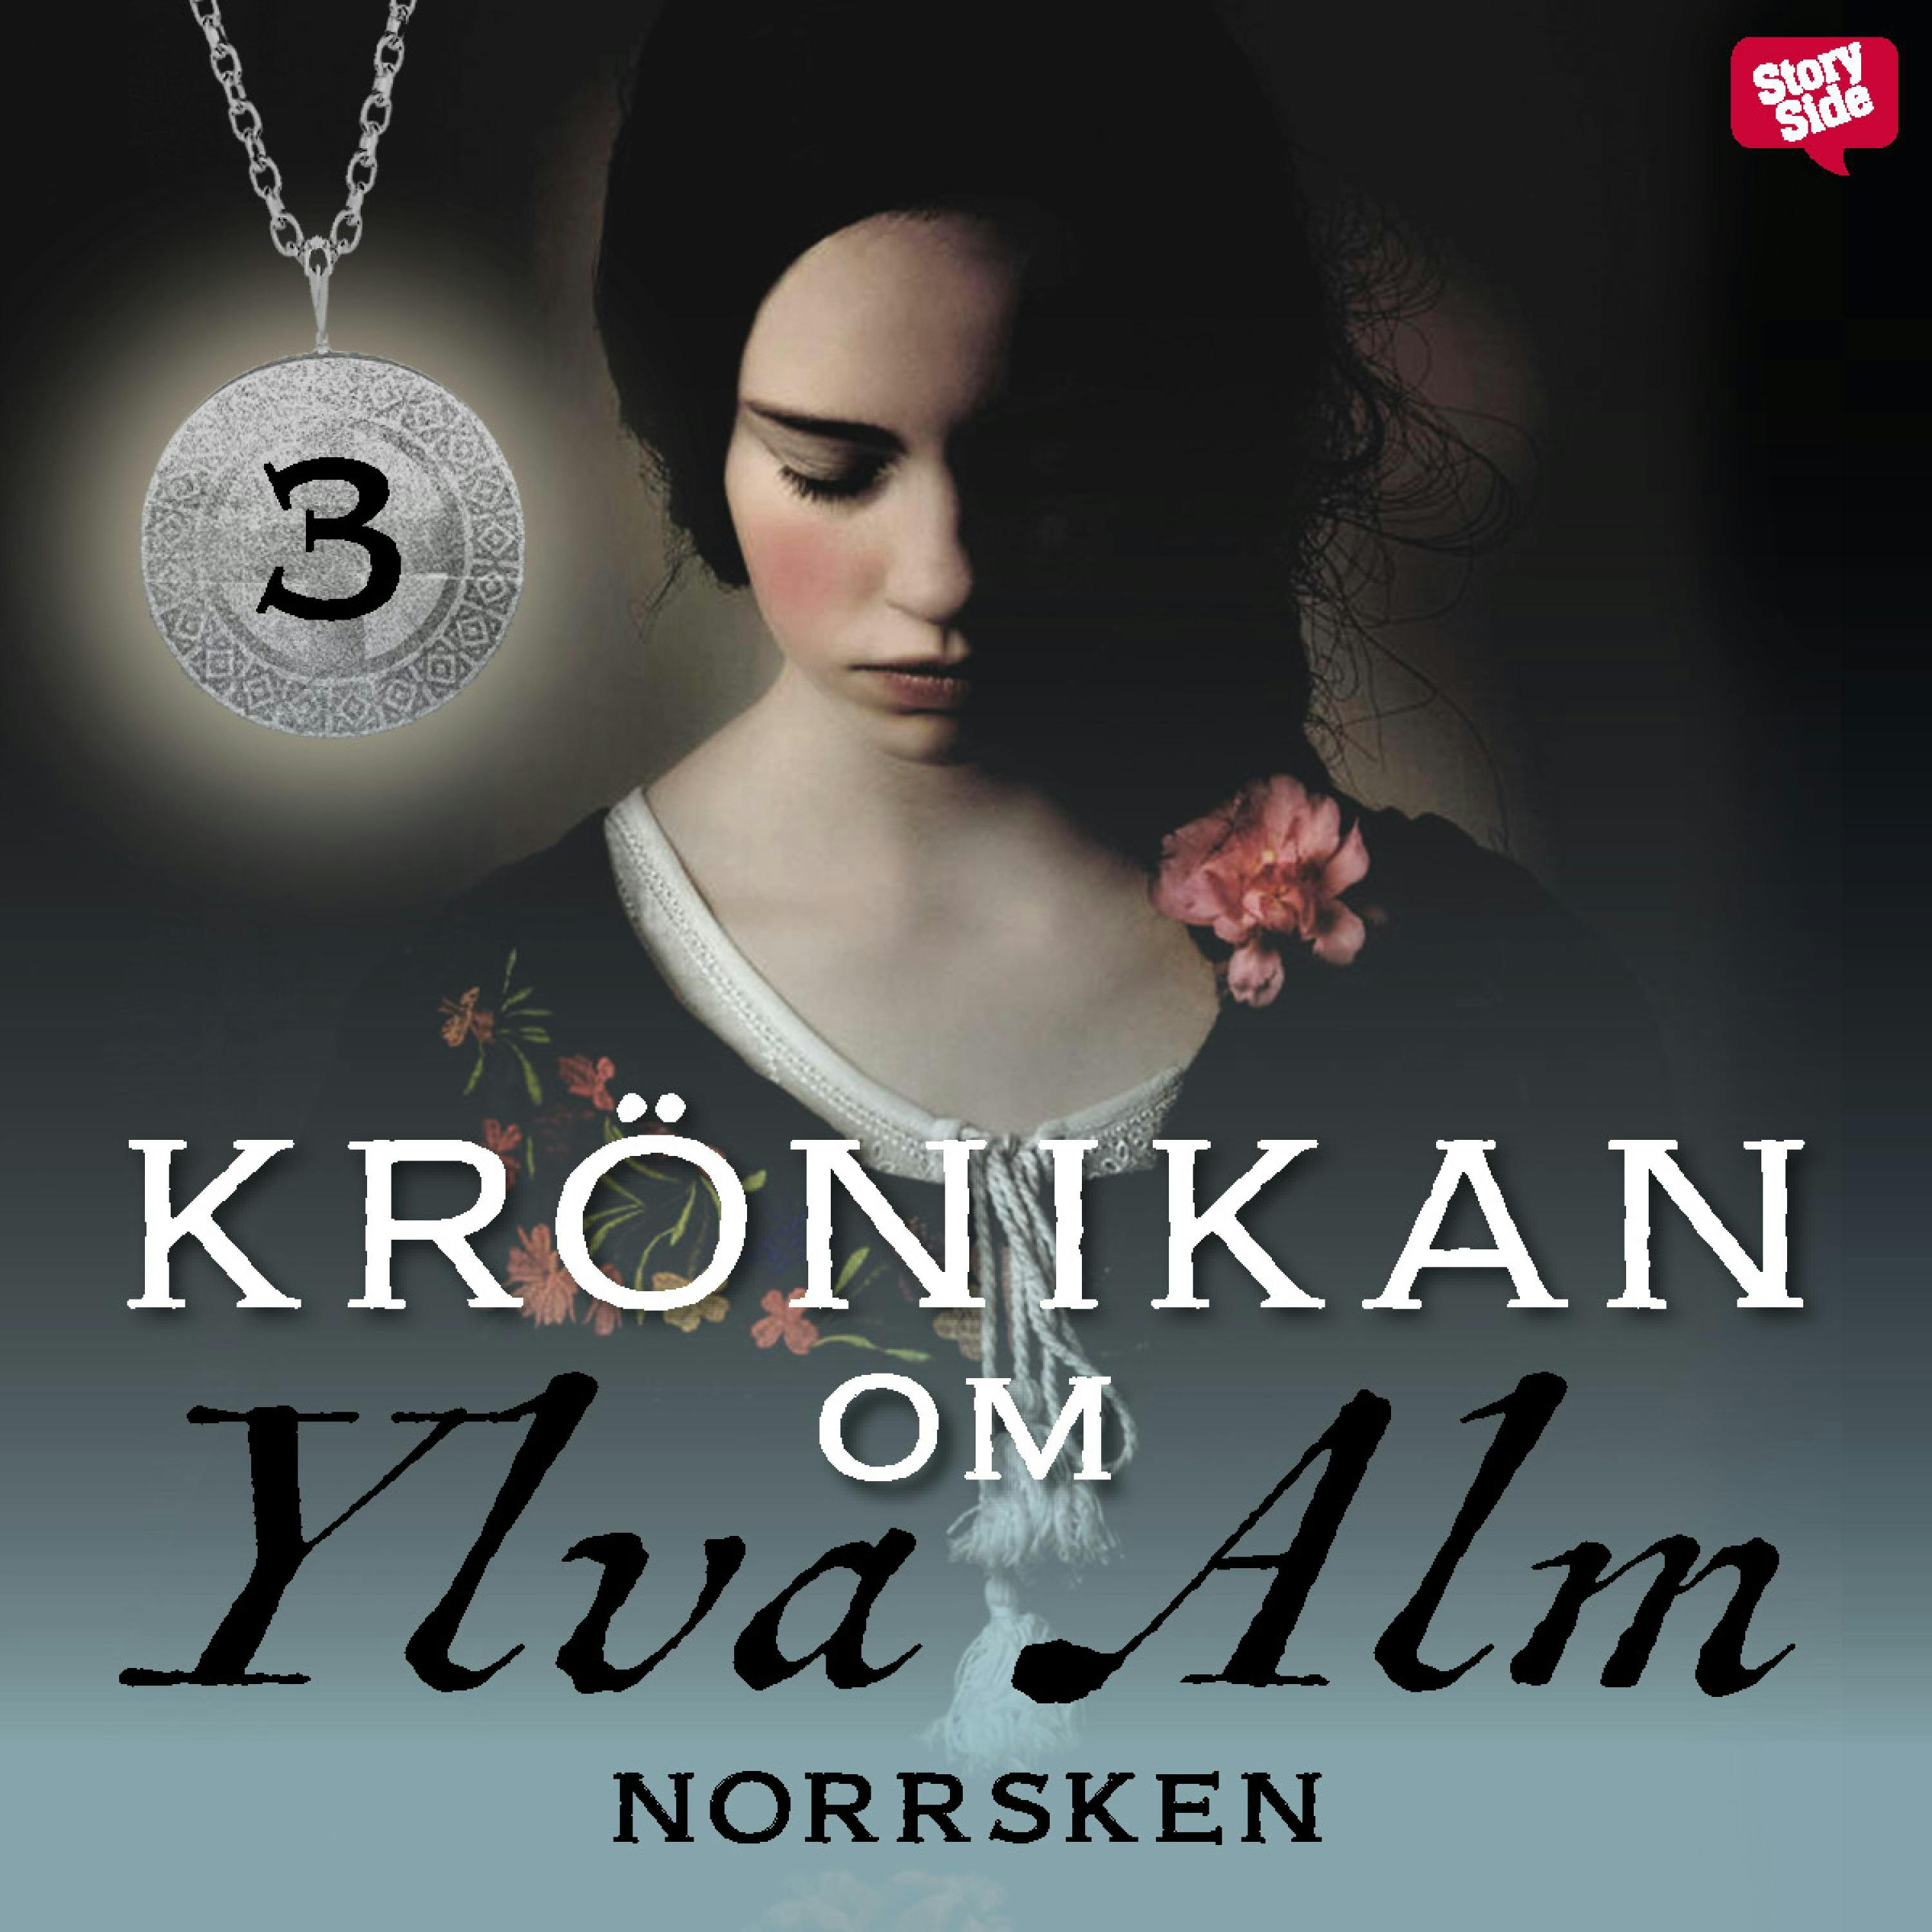 Norrsken - undefined